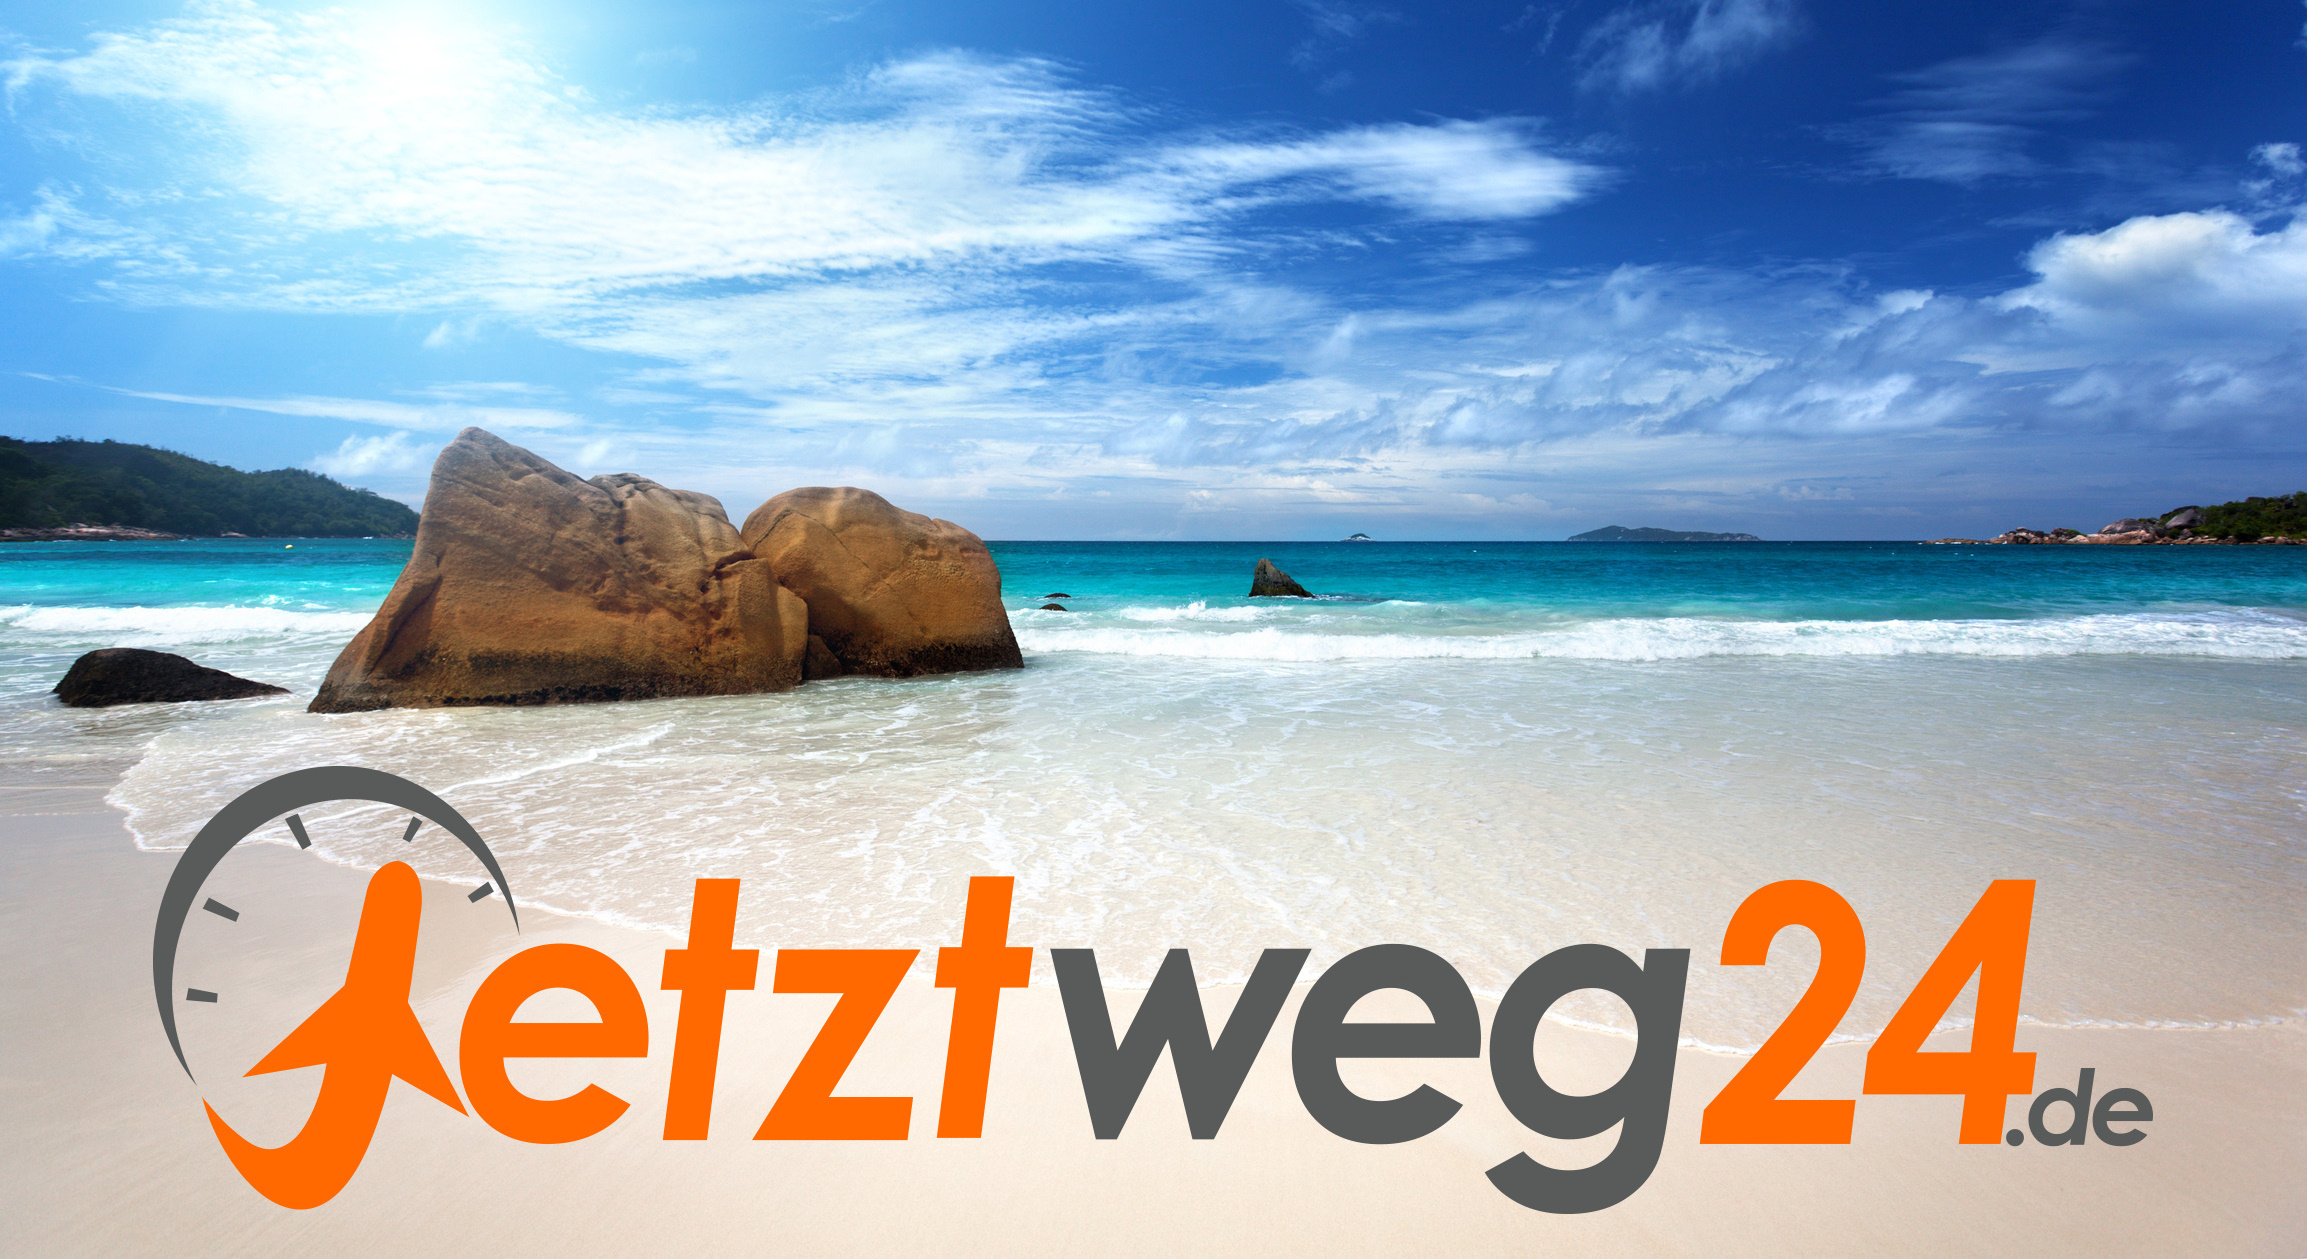 (c) Jetztweg24.de